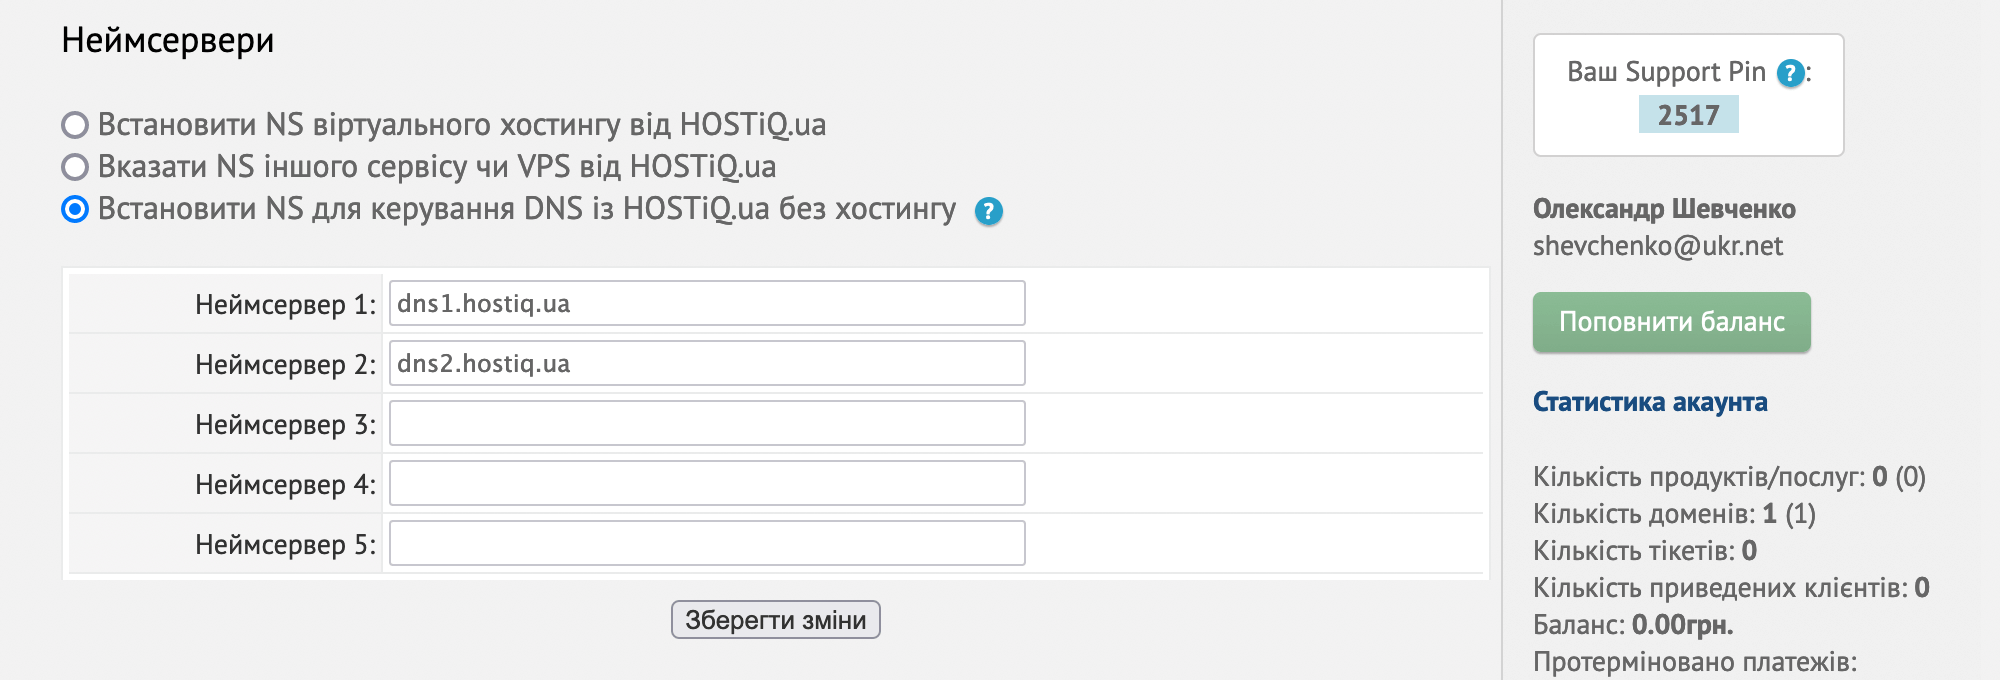 Варіант «Встановити NS для керування DNS з HOSTiQ.ua без хостингу» у блоку «Неймсервери» в параметрах домену